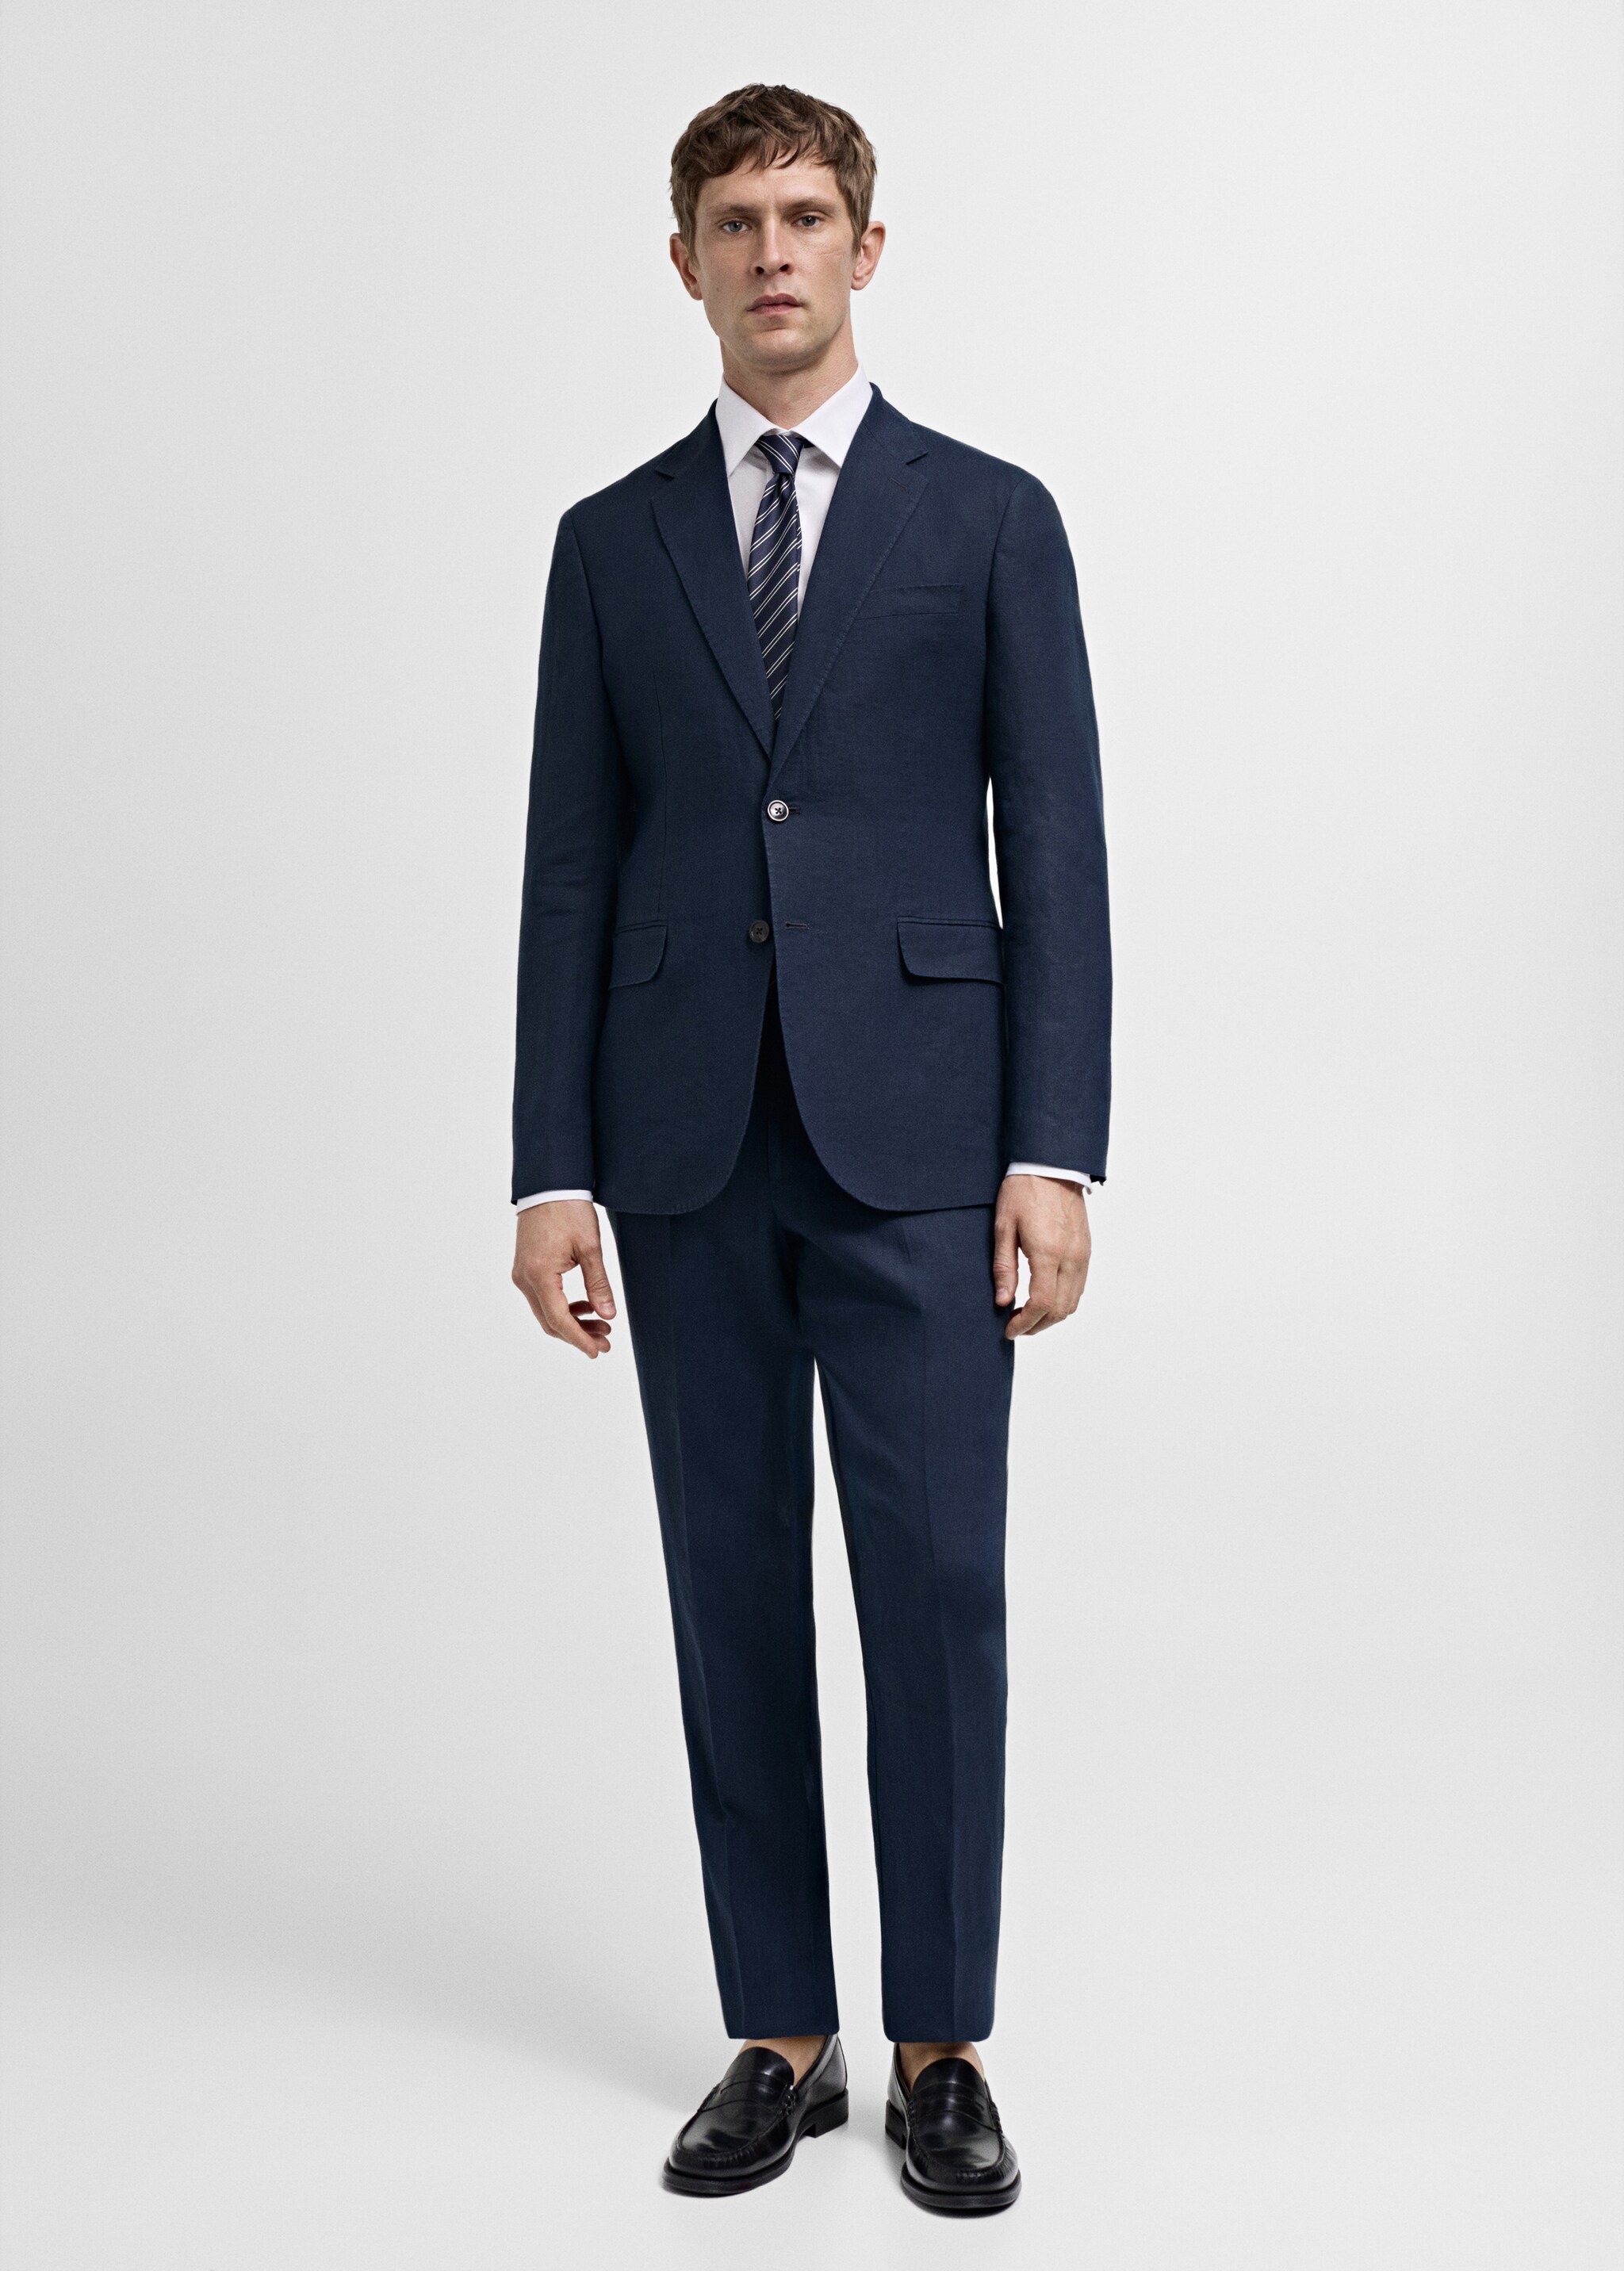 100% linen slim-fit suit jacket - General plane